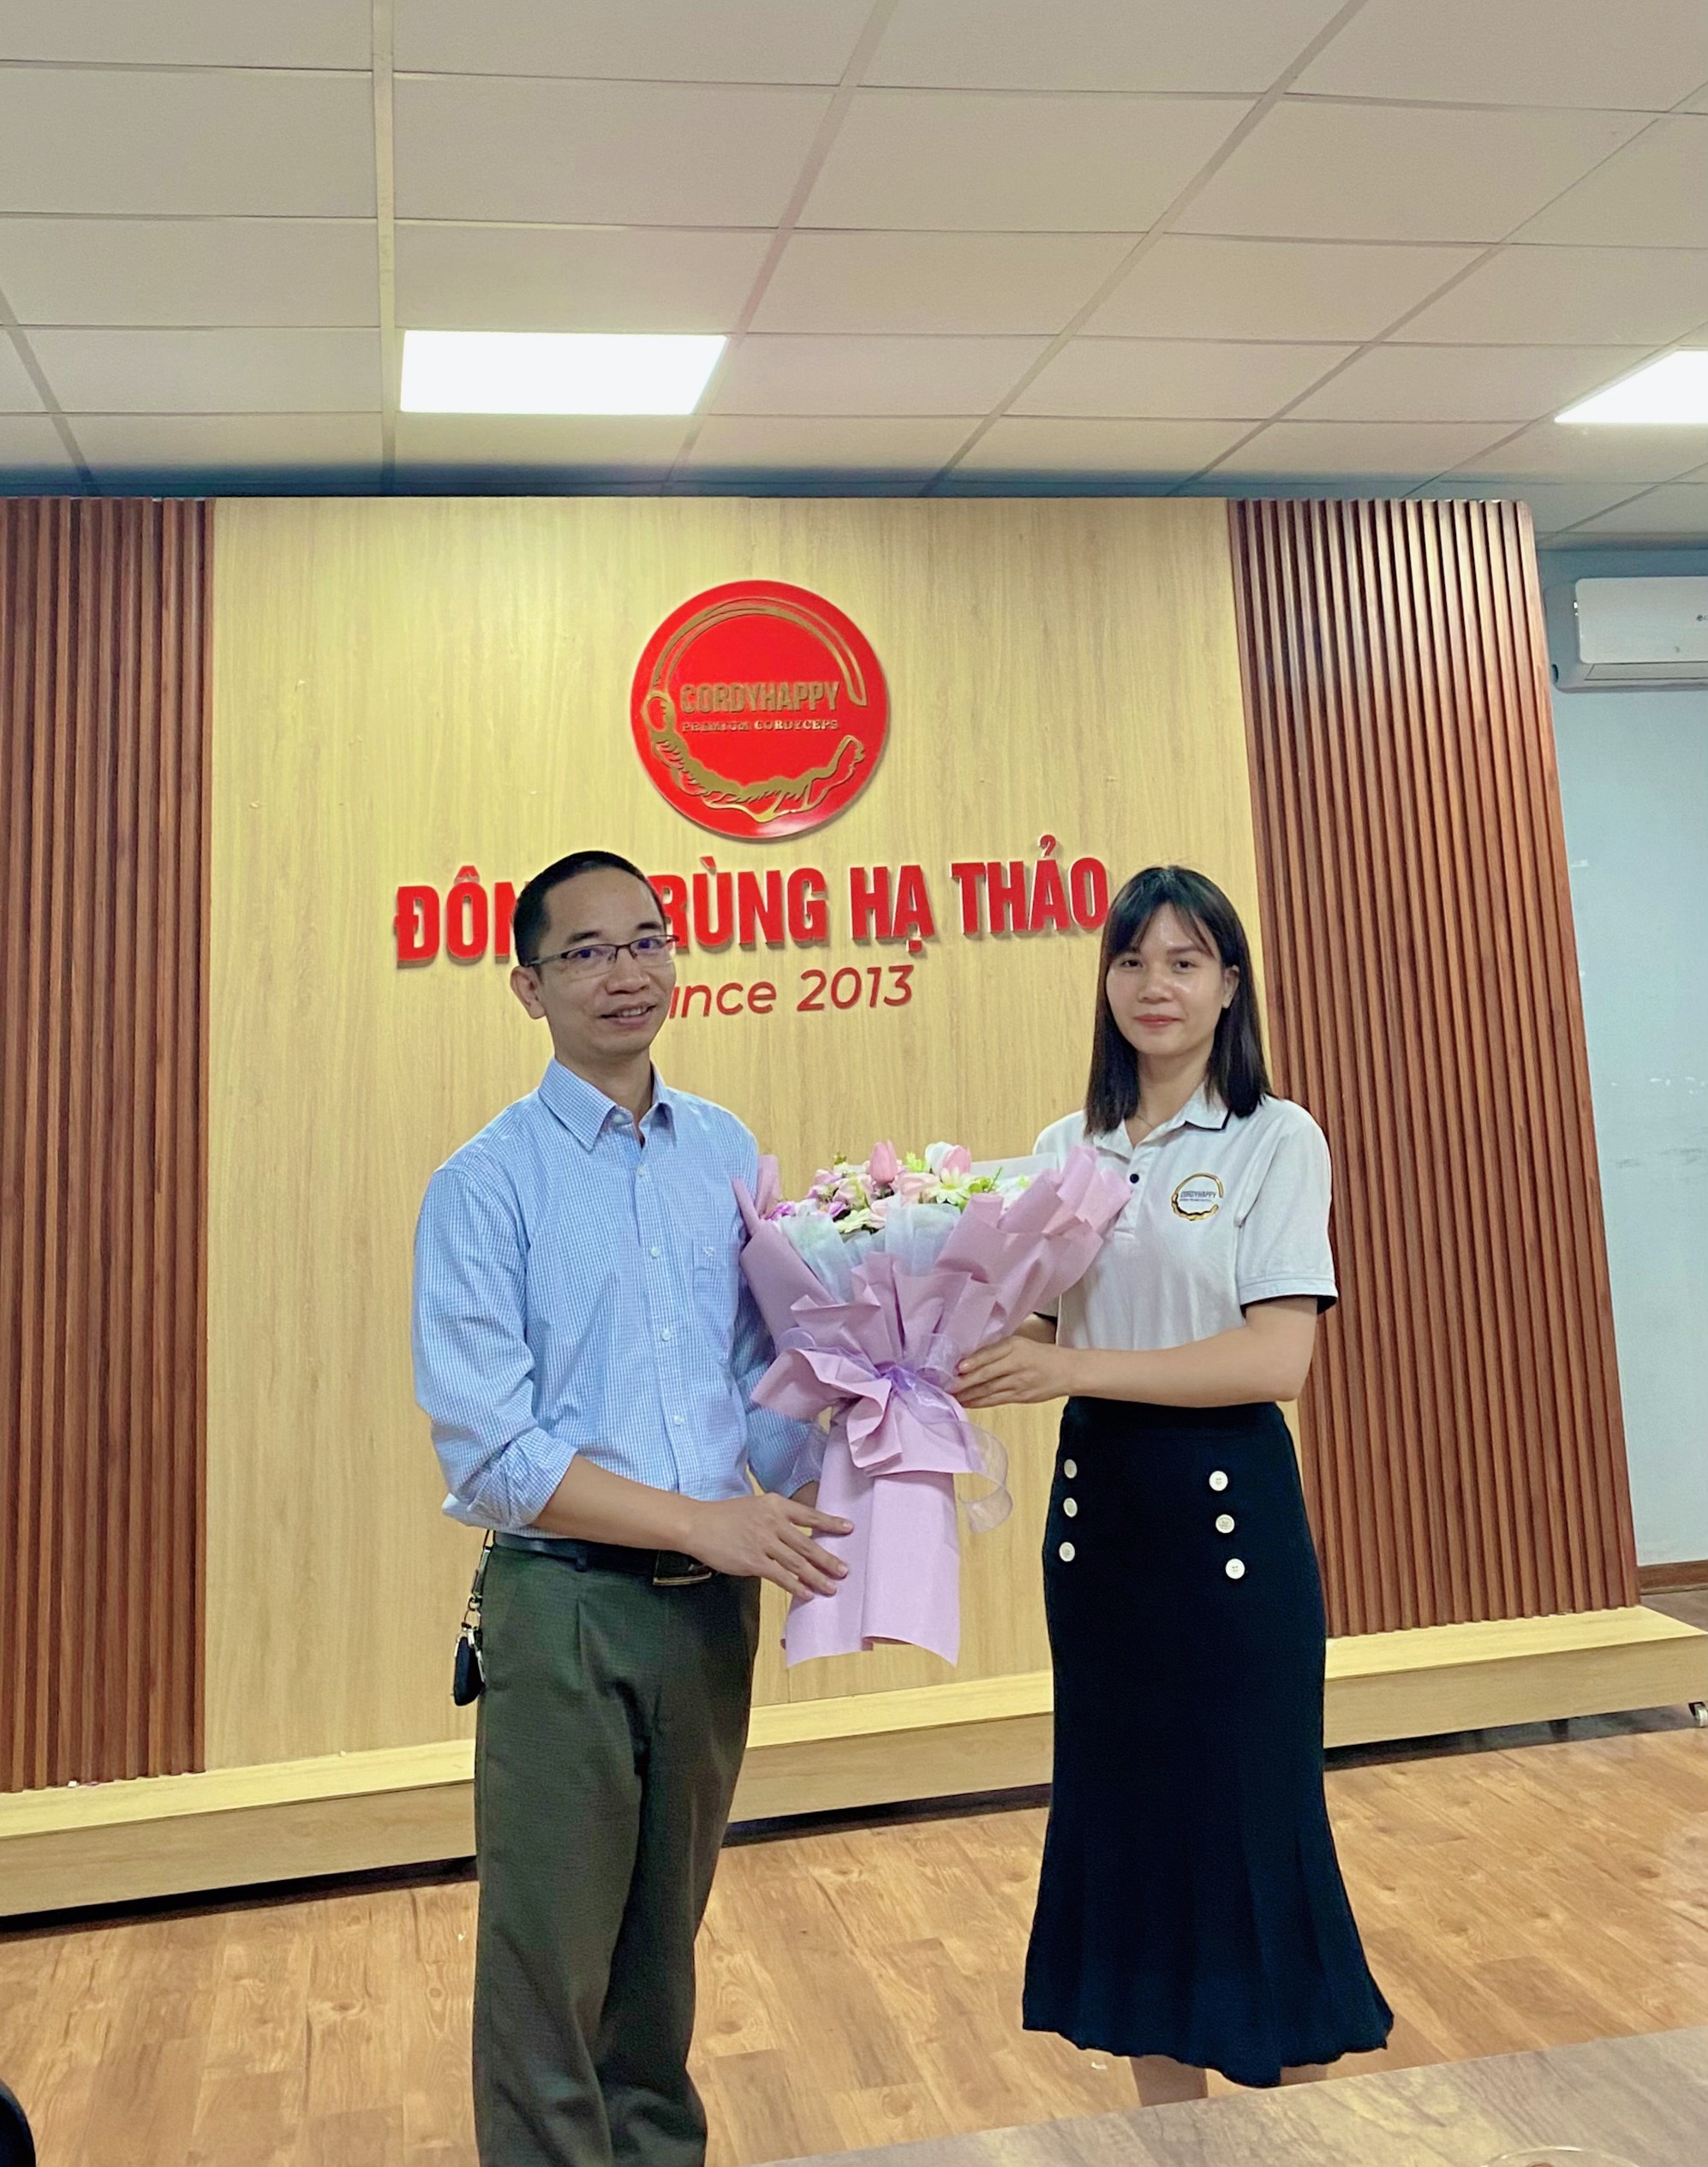 Tập thể Công ty cổ phần Khoa học Sự sống chúc mừng Tân cử nhân Nguyễn Thị Thúy!